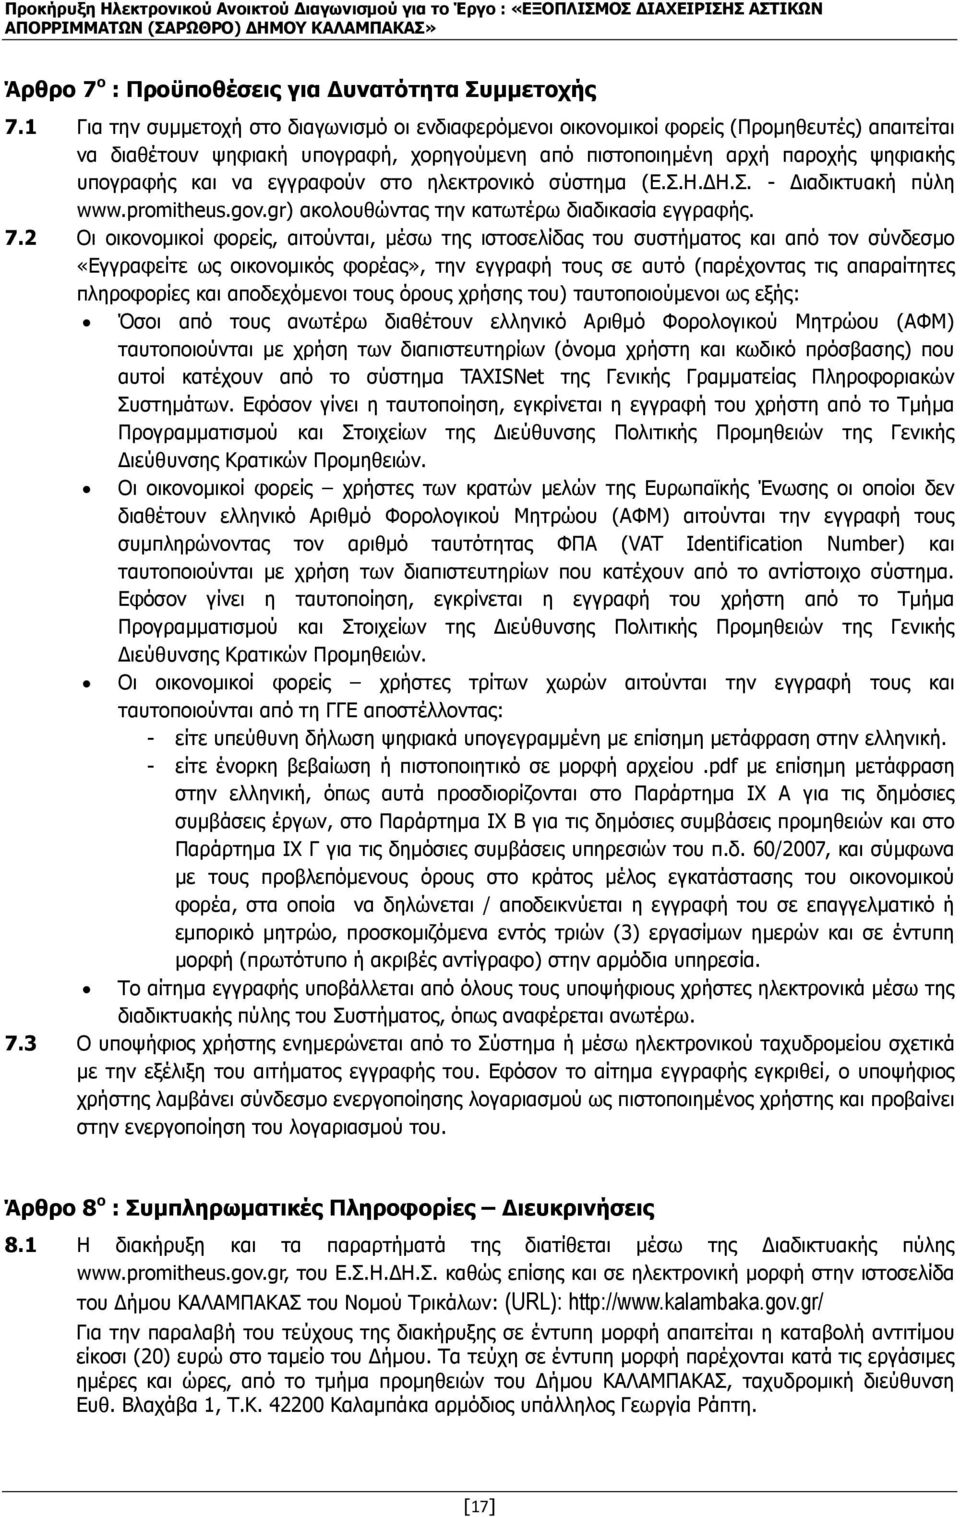 εγγραφούν στο ηλεκτρονικό σύστηµα (Ε.Σ.Η. Η.Σ. - ιαδικτυακή πύλη www.promitheus.gov.gr) ακολουθώντας την κατωτέρω διαδικασία εγγραφής. 7.